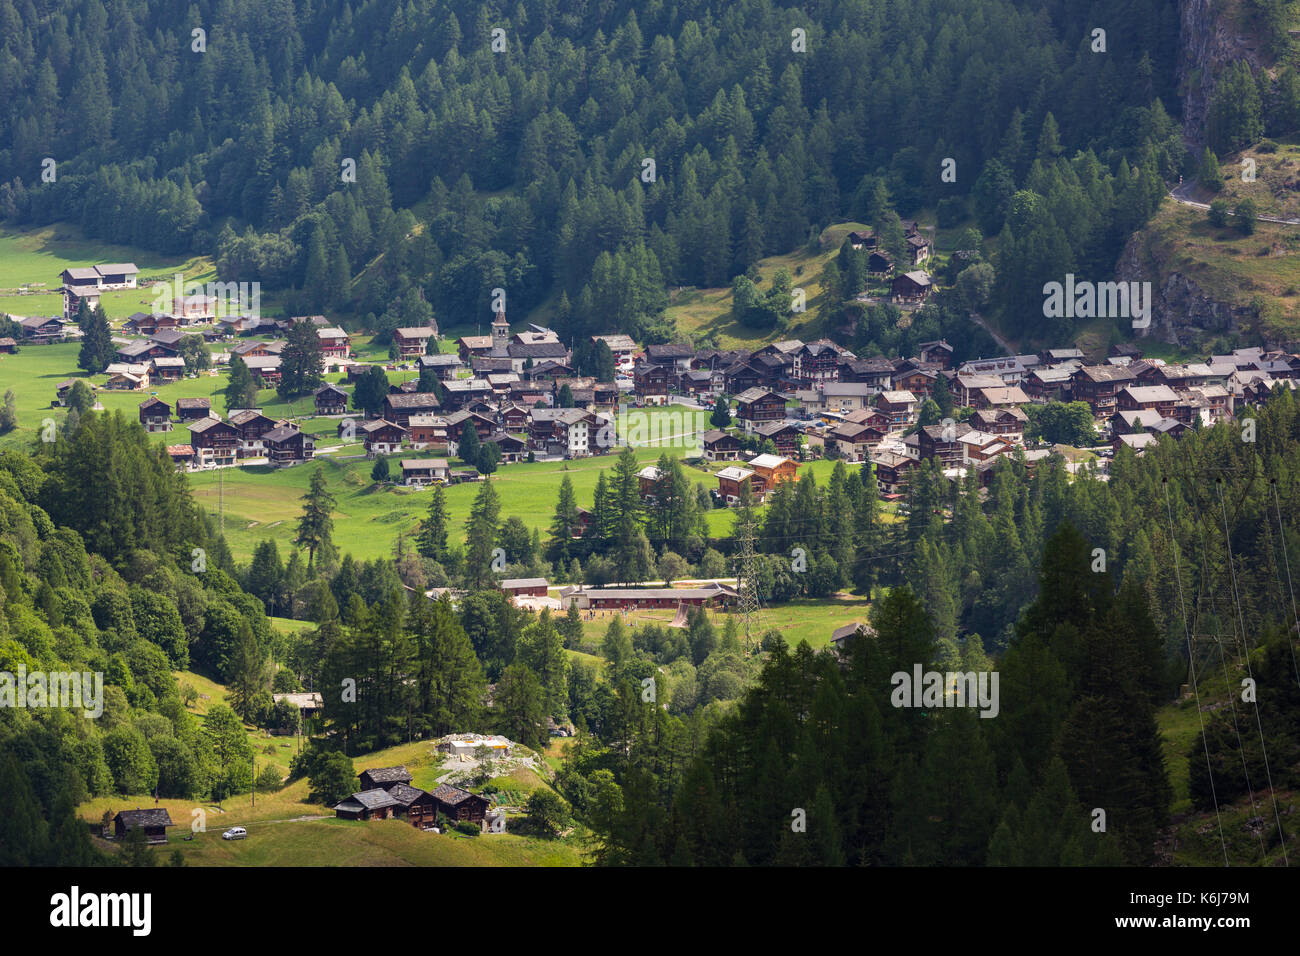 Les hauderes, Suisse - les hauderes, un village suisse dans les Alpes Pennines. Banque D'Images